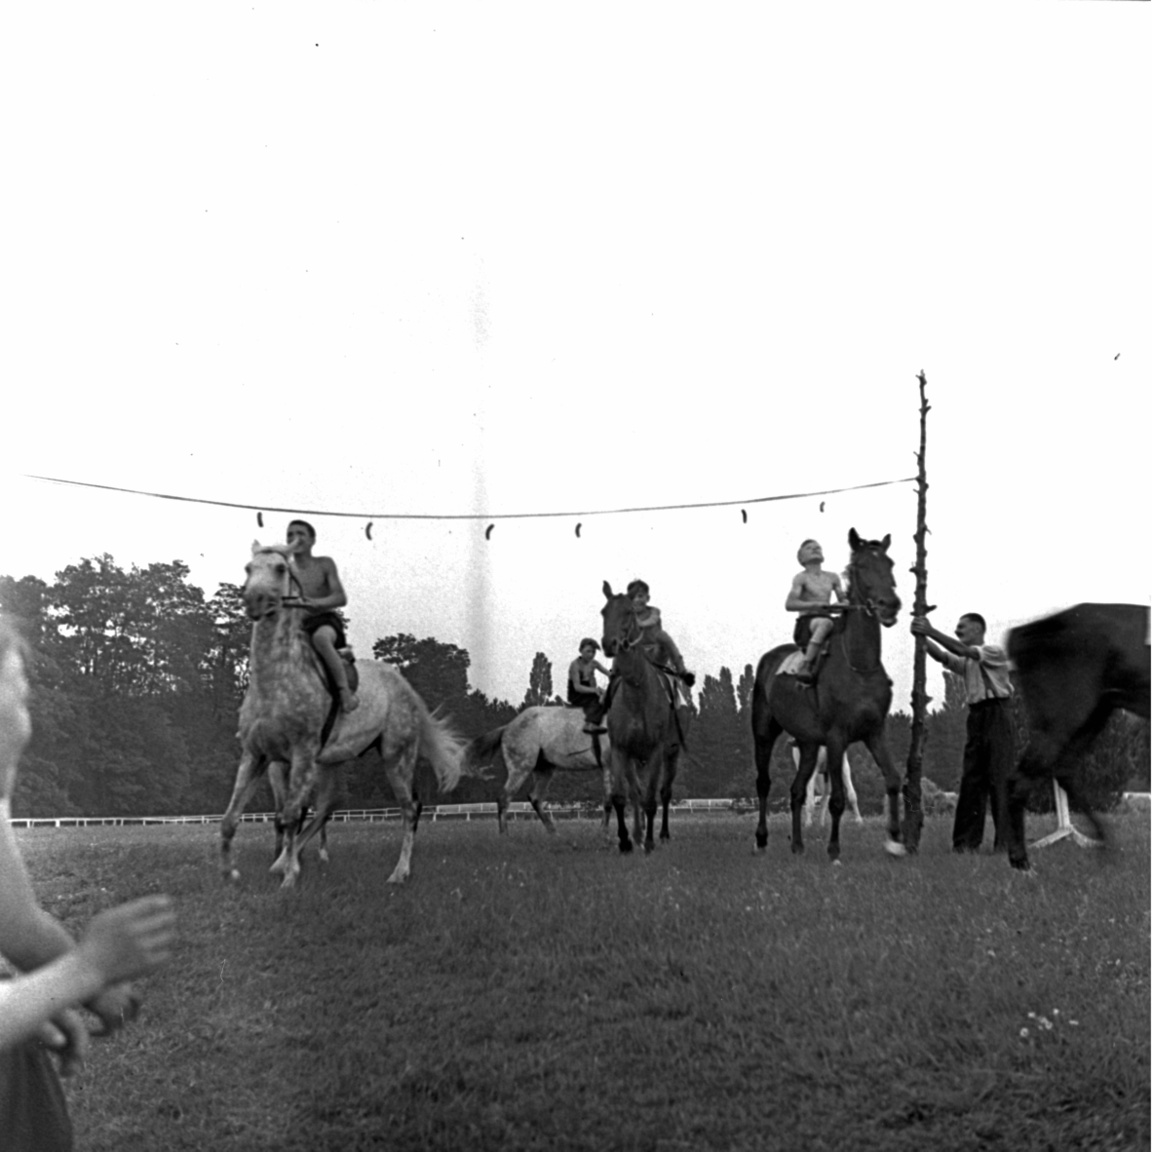 Azért Petanovits sem ment a szomszédba egy kis trükközésért. Az 1933-as Nemzeti és Hazafi DÍj után fújolással tüntettek ellene a fogadők. A háromévesek versenyében az első két helyet Petanovits lovai vitték el. Végrehajtó nyert Fokos előtt. Utóbbi volt a favorit, ezért rengetegen tettek rá pénzt. A fogadók úgy érezték átverték őket, Petanovits belenyúlt a versenybe. Főleg azután, hogy az előző évben Végrehajtóról terjedt el, hogy jobb, aztán a fontos versenyeket Fokos nyerte. A nagyot kaszáló bukmékerek azért tudtak örülni Petanovits ilyen sikereinek is.